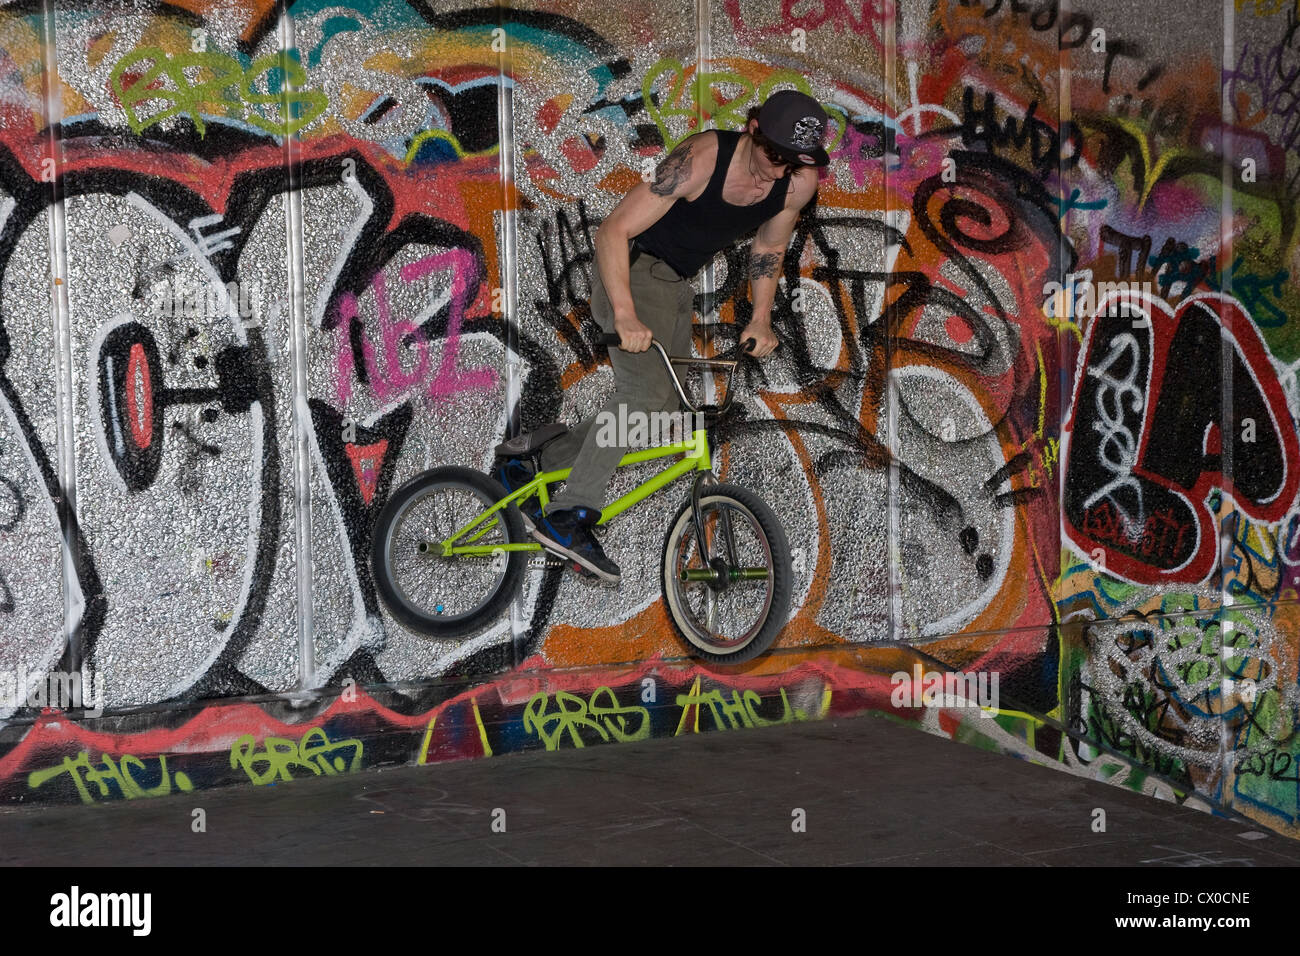 BMX freestyle bike riding 180 graffiti wall rider Stock Photo - Alamy